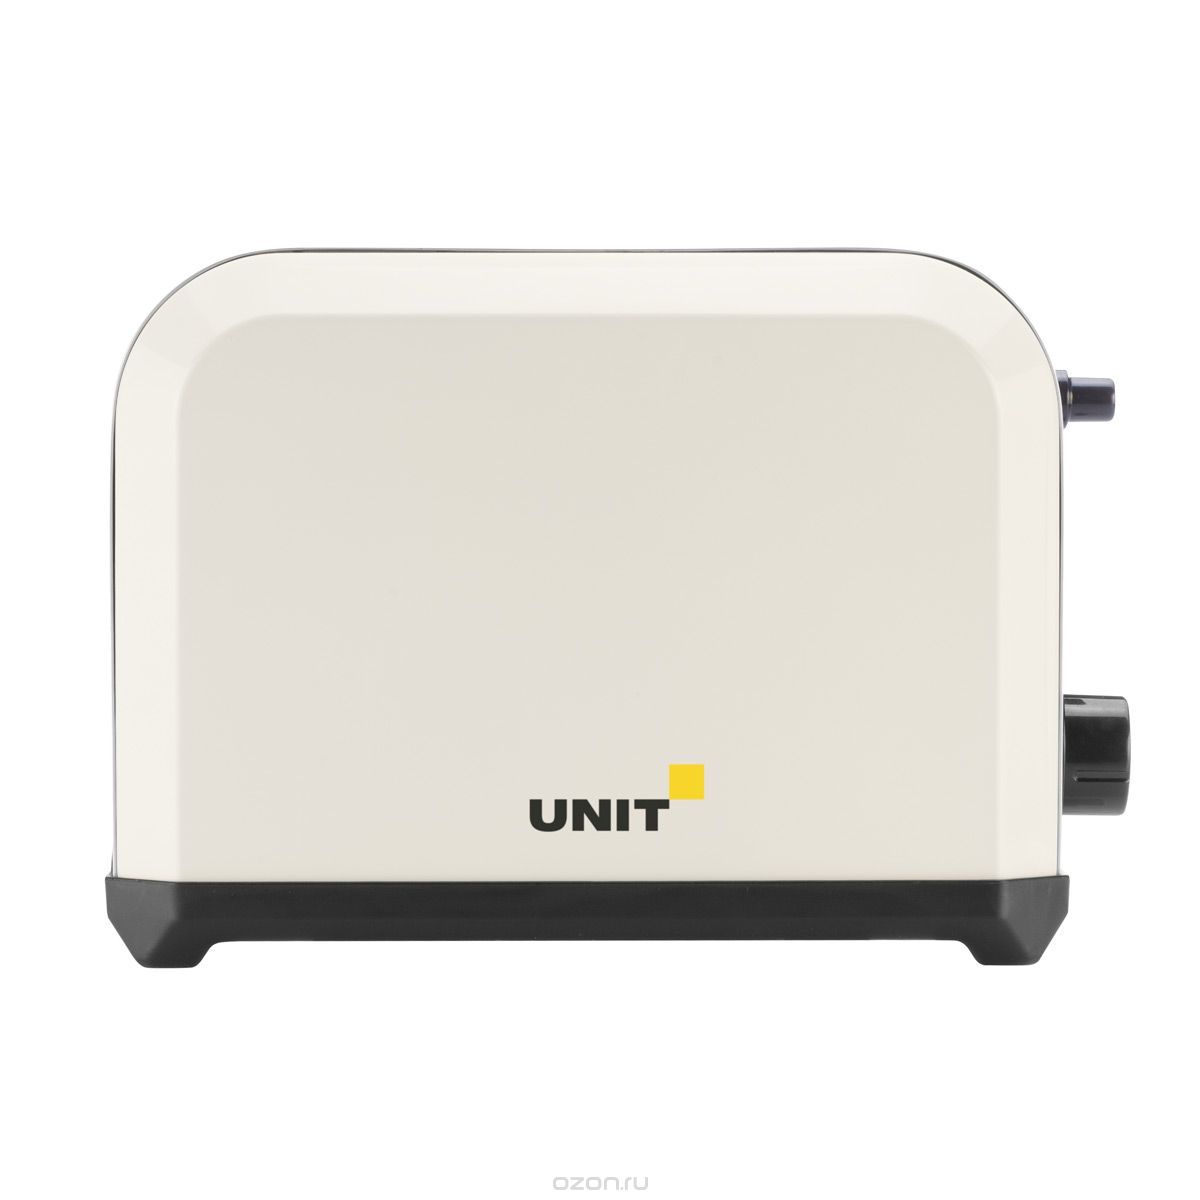  Unit UST-018, Beige